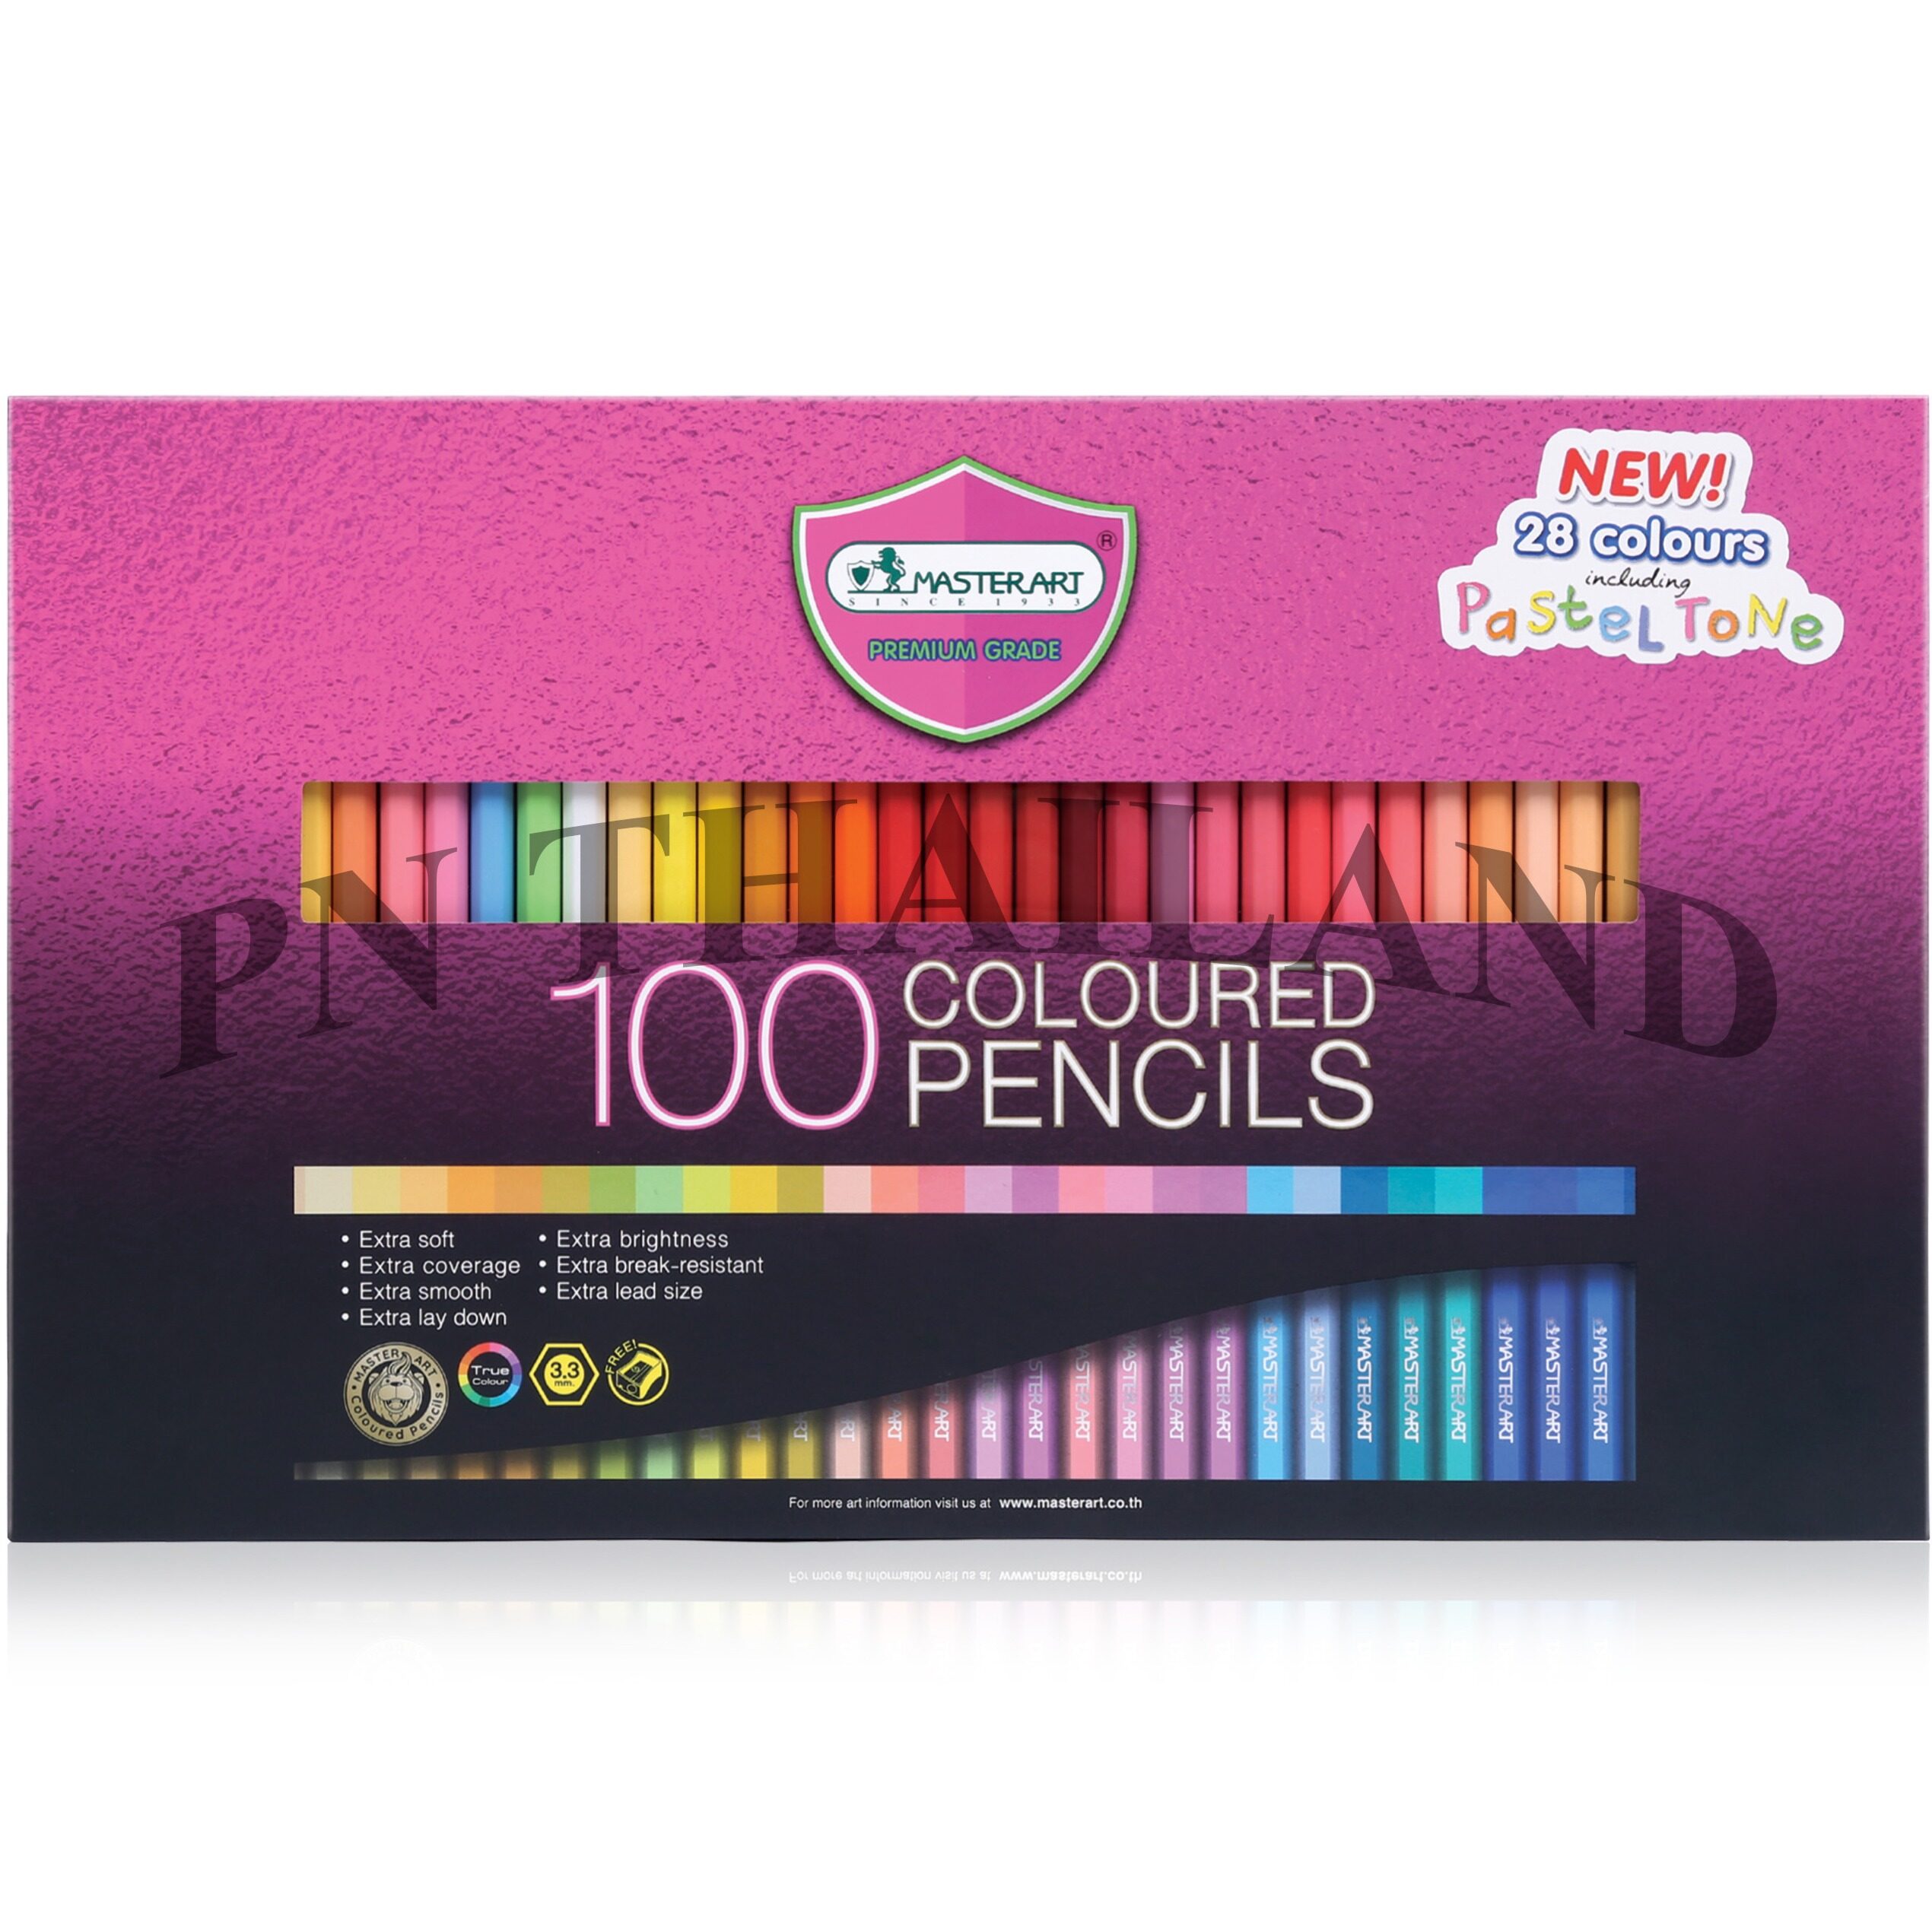 Master Art มาสเตอร์อาร์ต ดินสอสี สีไม้ 100 แท่ง 100 สี 3 ชั้น รุ่นมาสเตอร์ซีรี่ย์(MASTER SERIES)